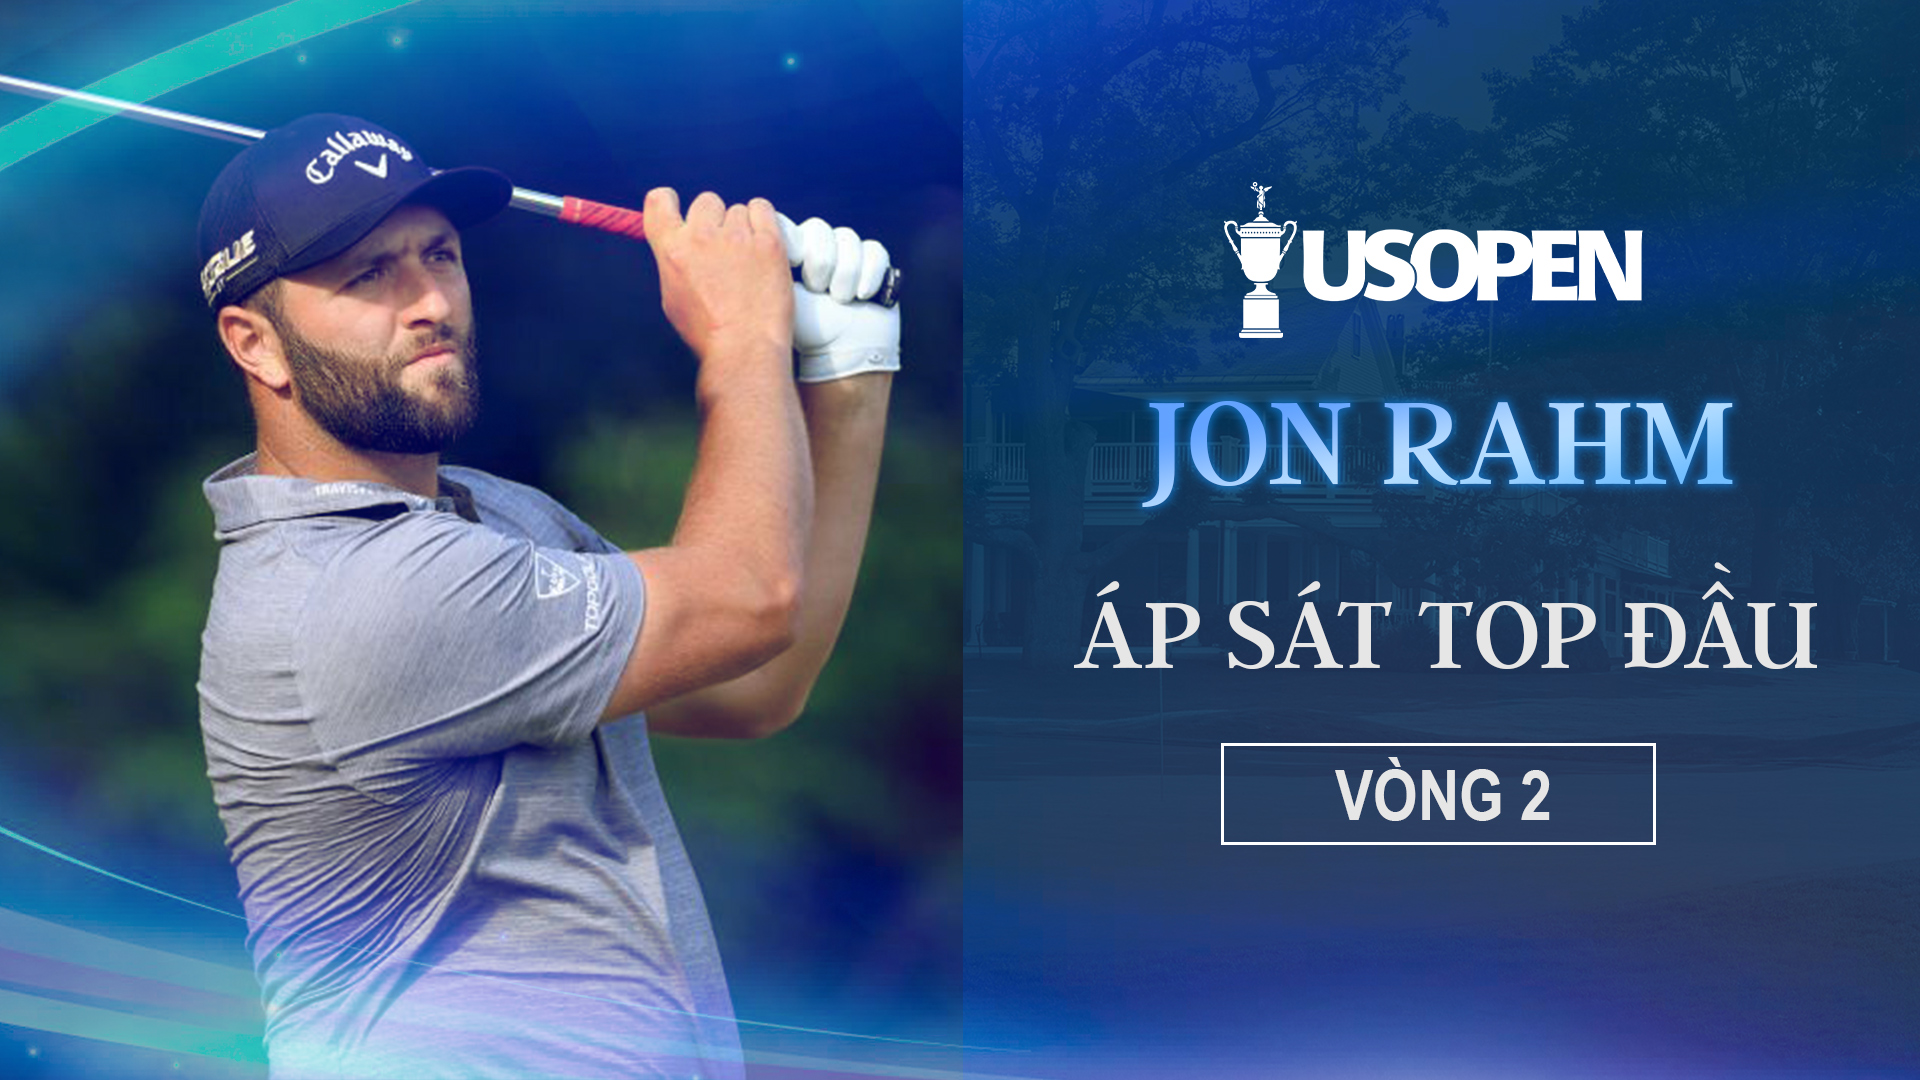 Jon Rahm áp sát top đầu | Vòng 2 US Open - US Open Golf